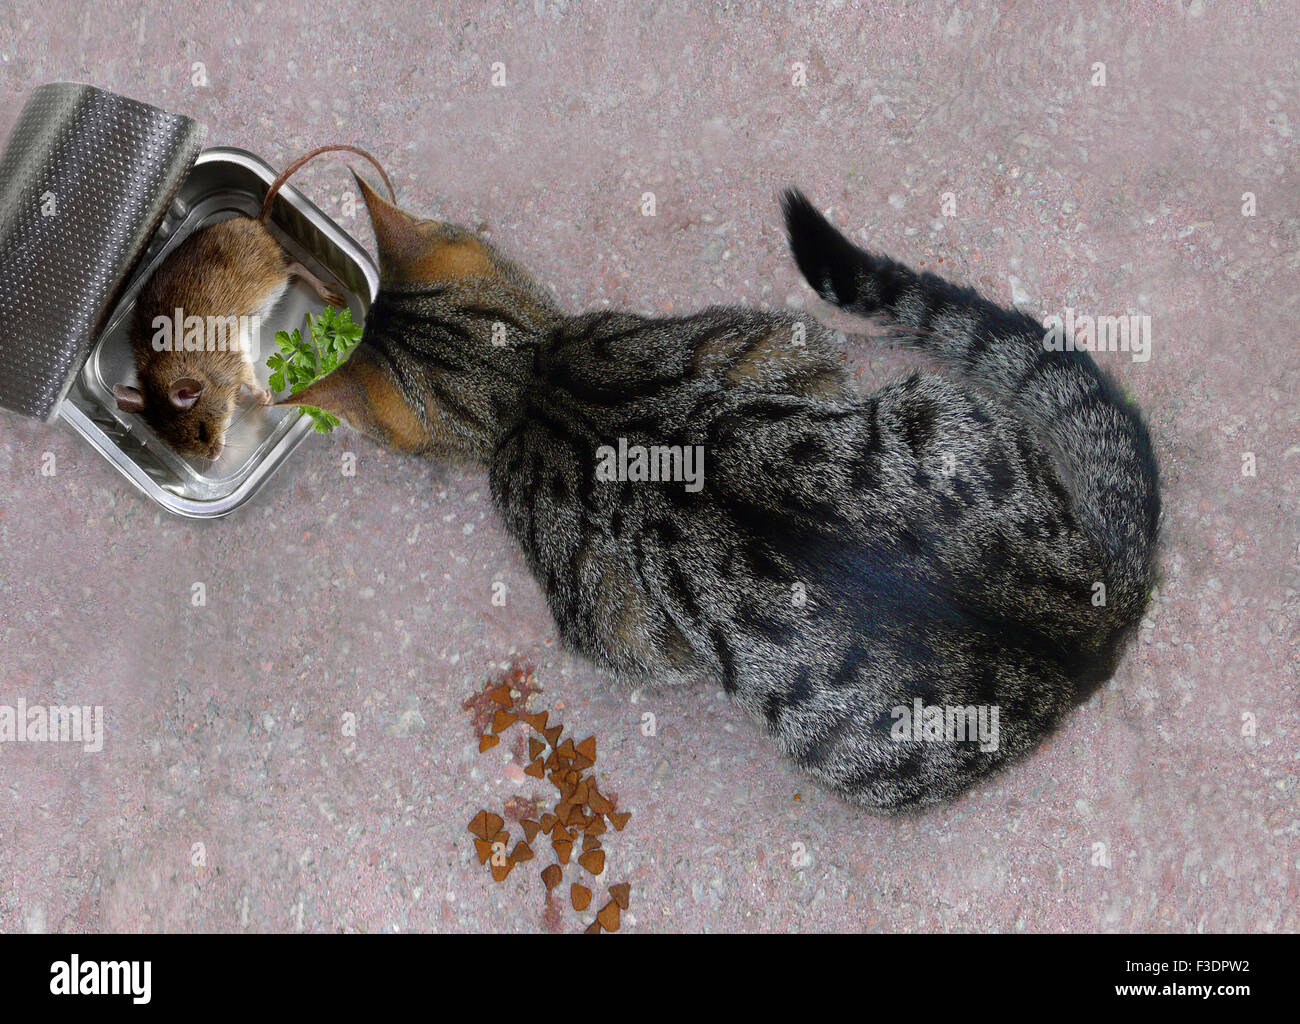 Katze sitzt vor toten Maus, Katzenfutter, Deutschland Stockfotografie -  Alamy